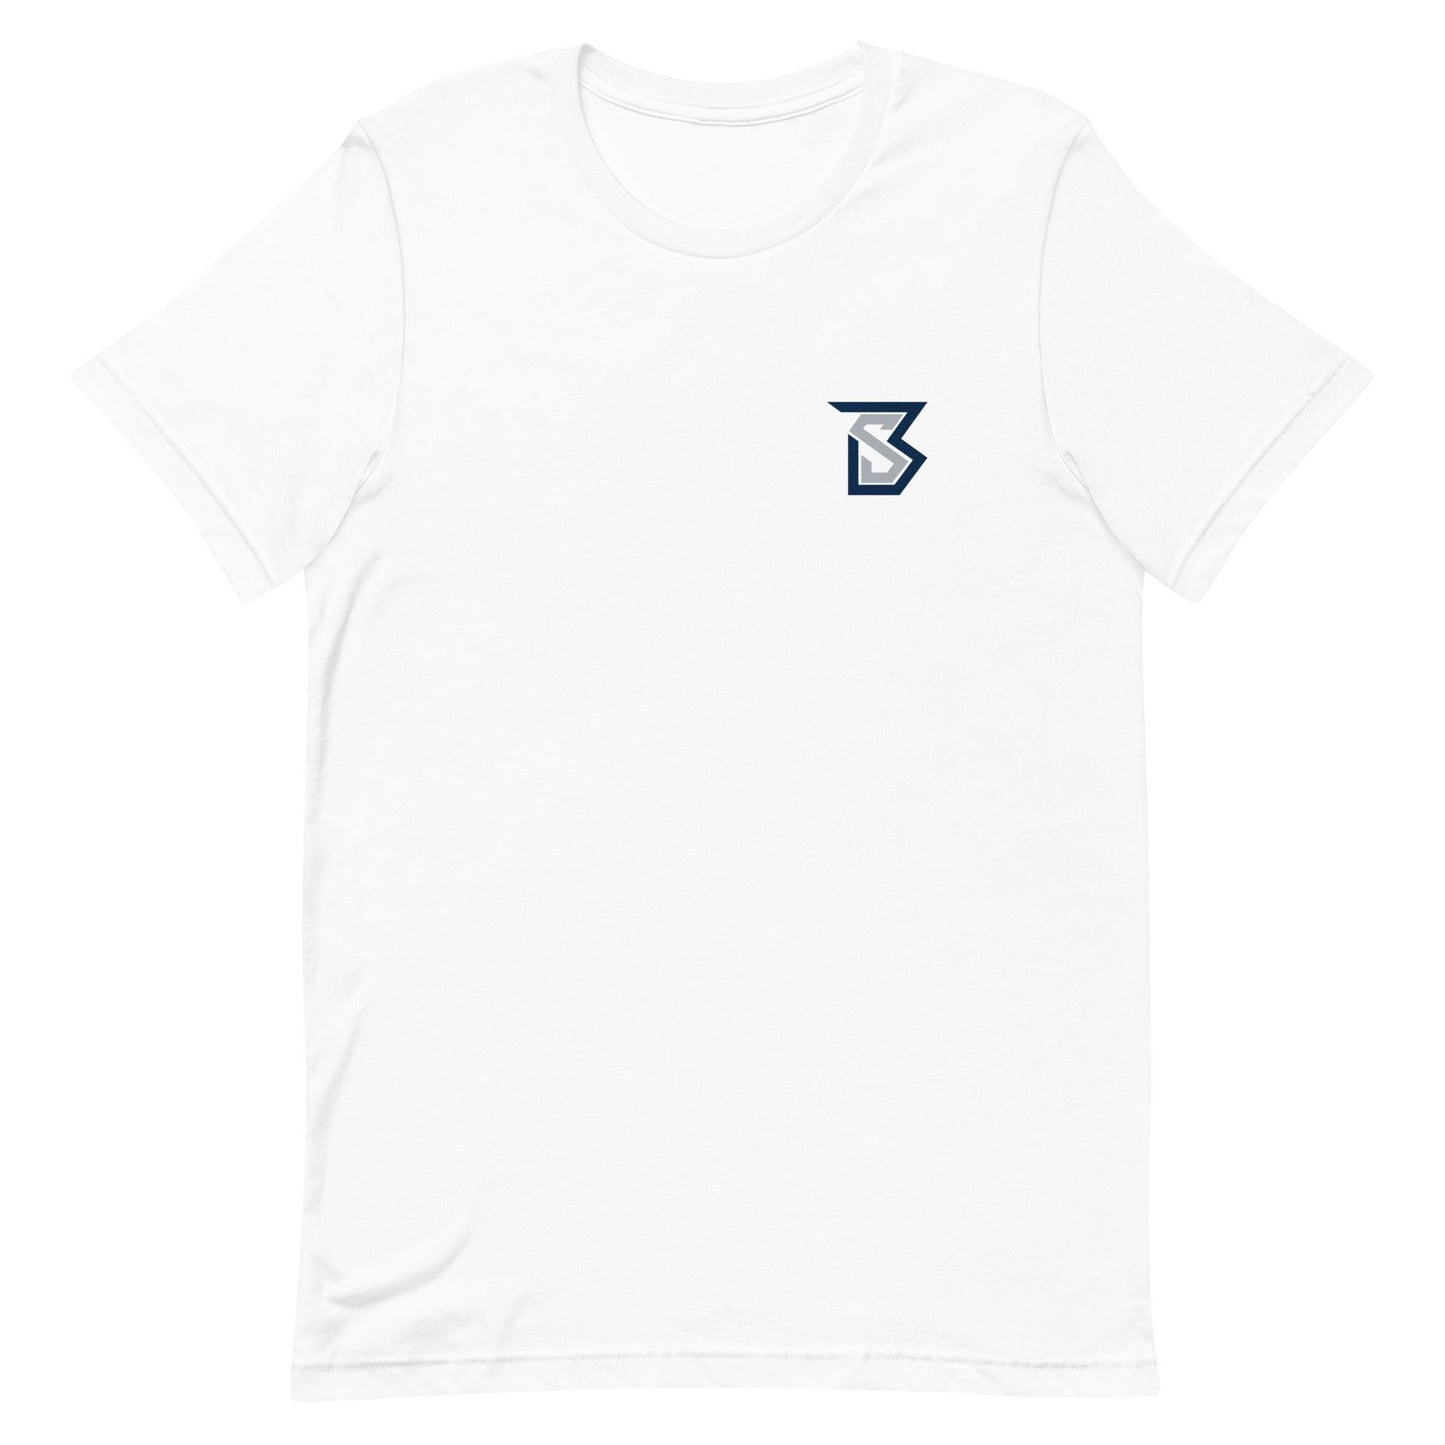 Bentlee Sanders "Signature" T-Shirt - Fan Arch